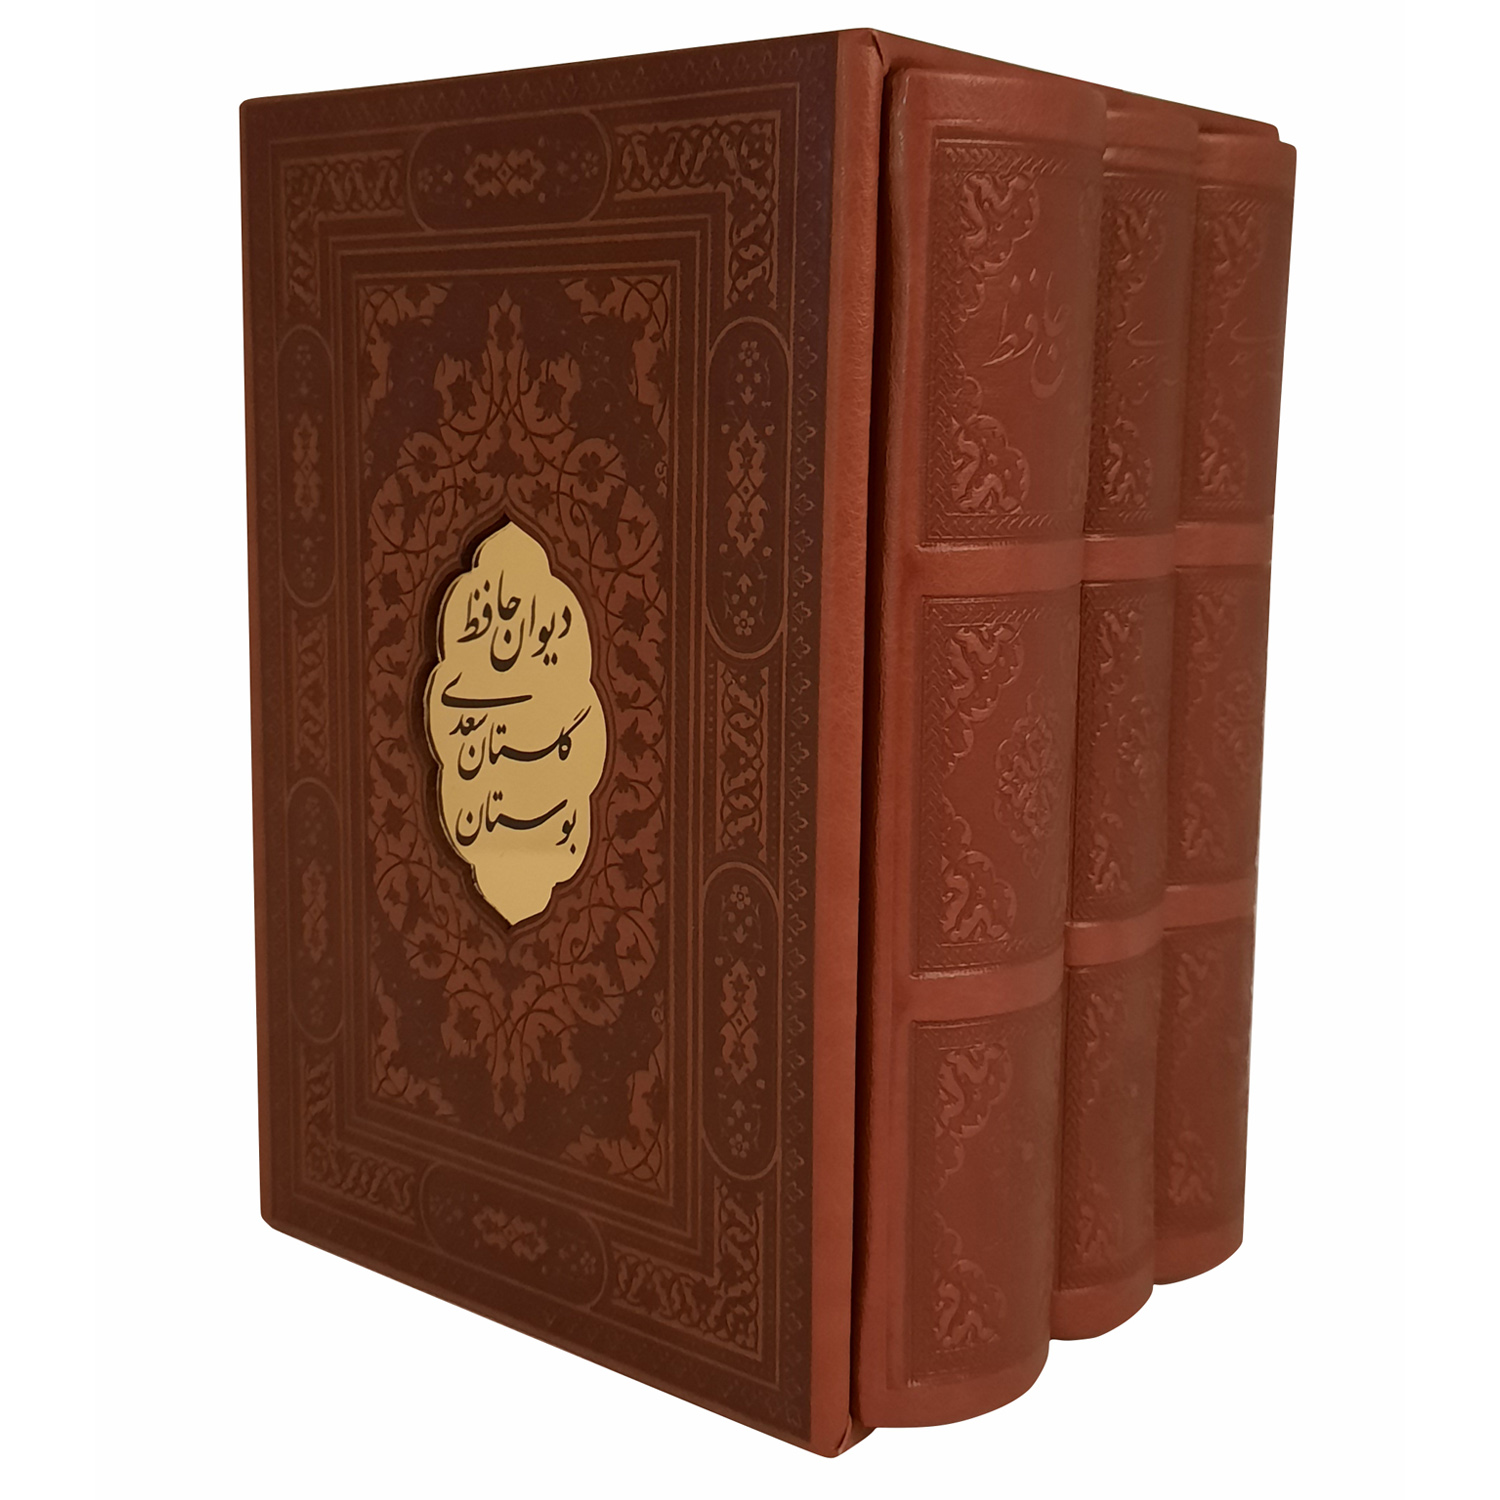 نقد و بررسی کتاب بوستان وگلستان سعدی و دیوان حافظ انتشارات پیام عدالت 3 جلدی توسط خریداران